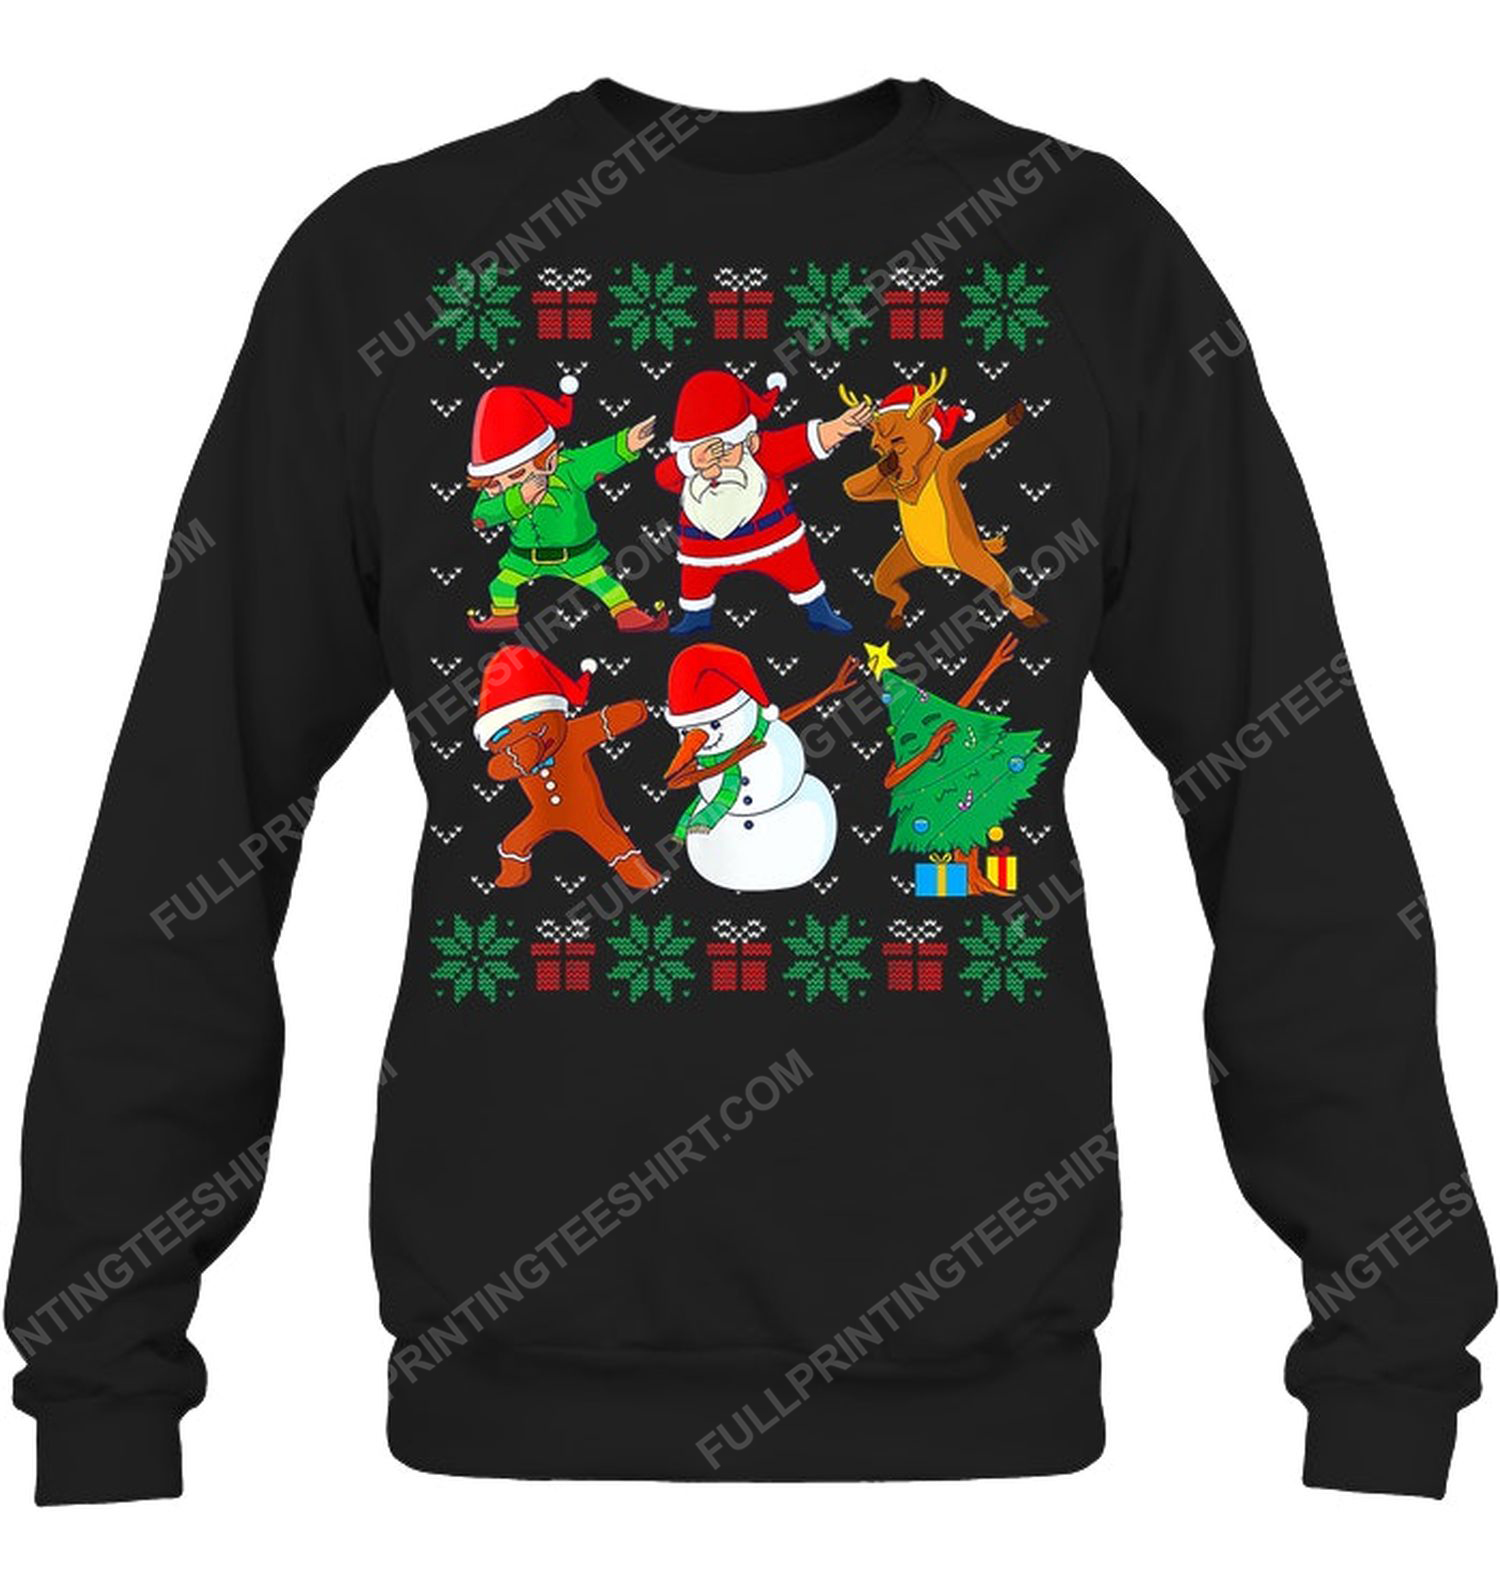 Santa dab squad christmas night sweatshirt